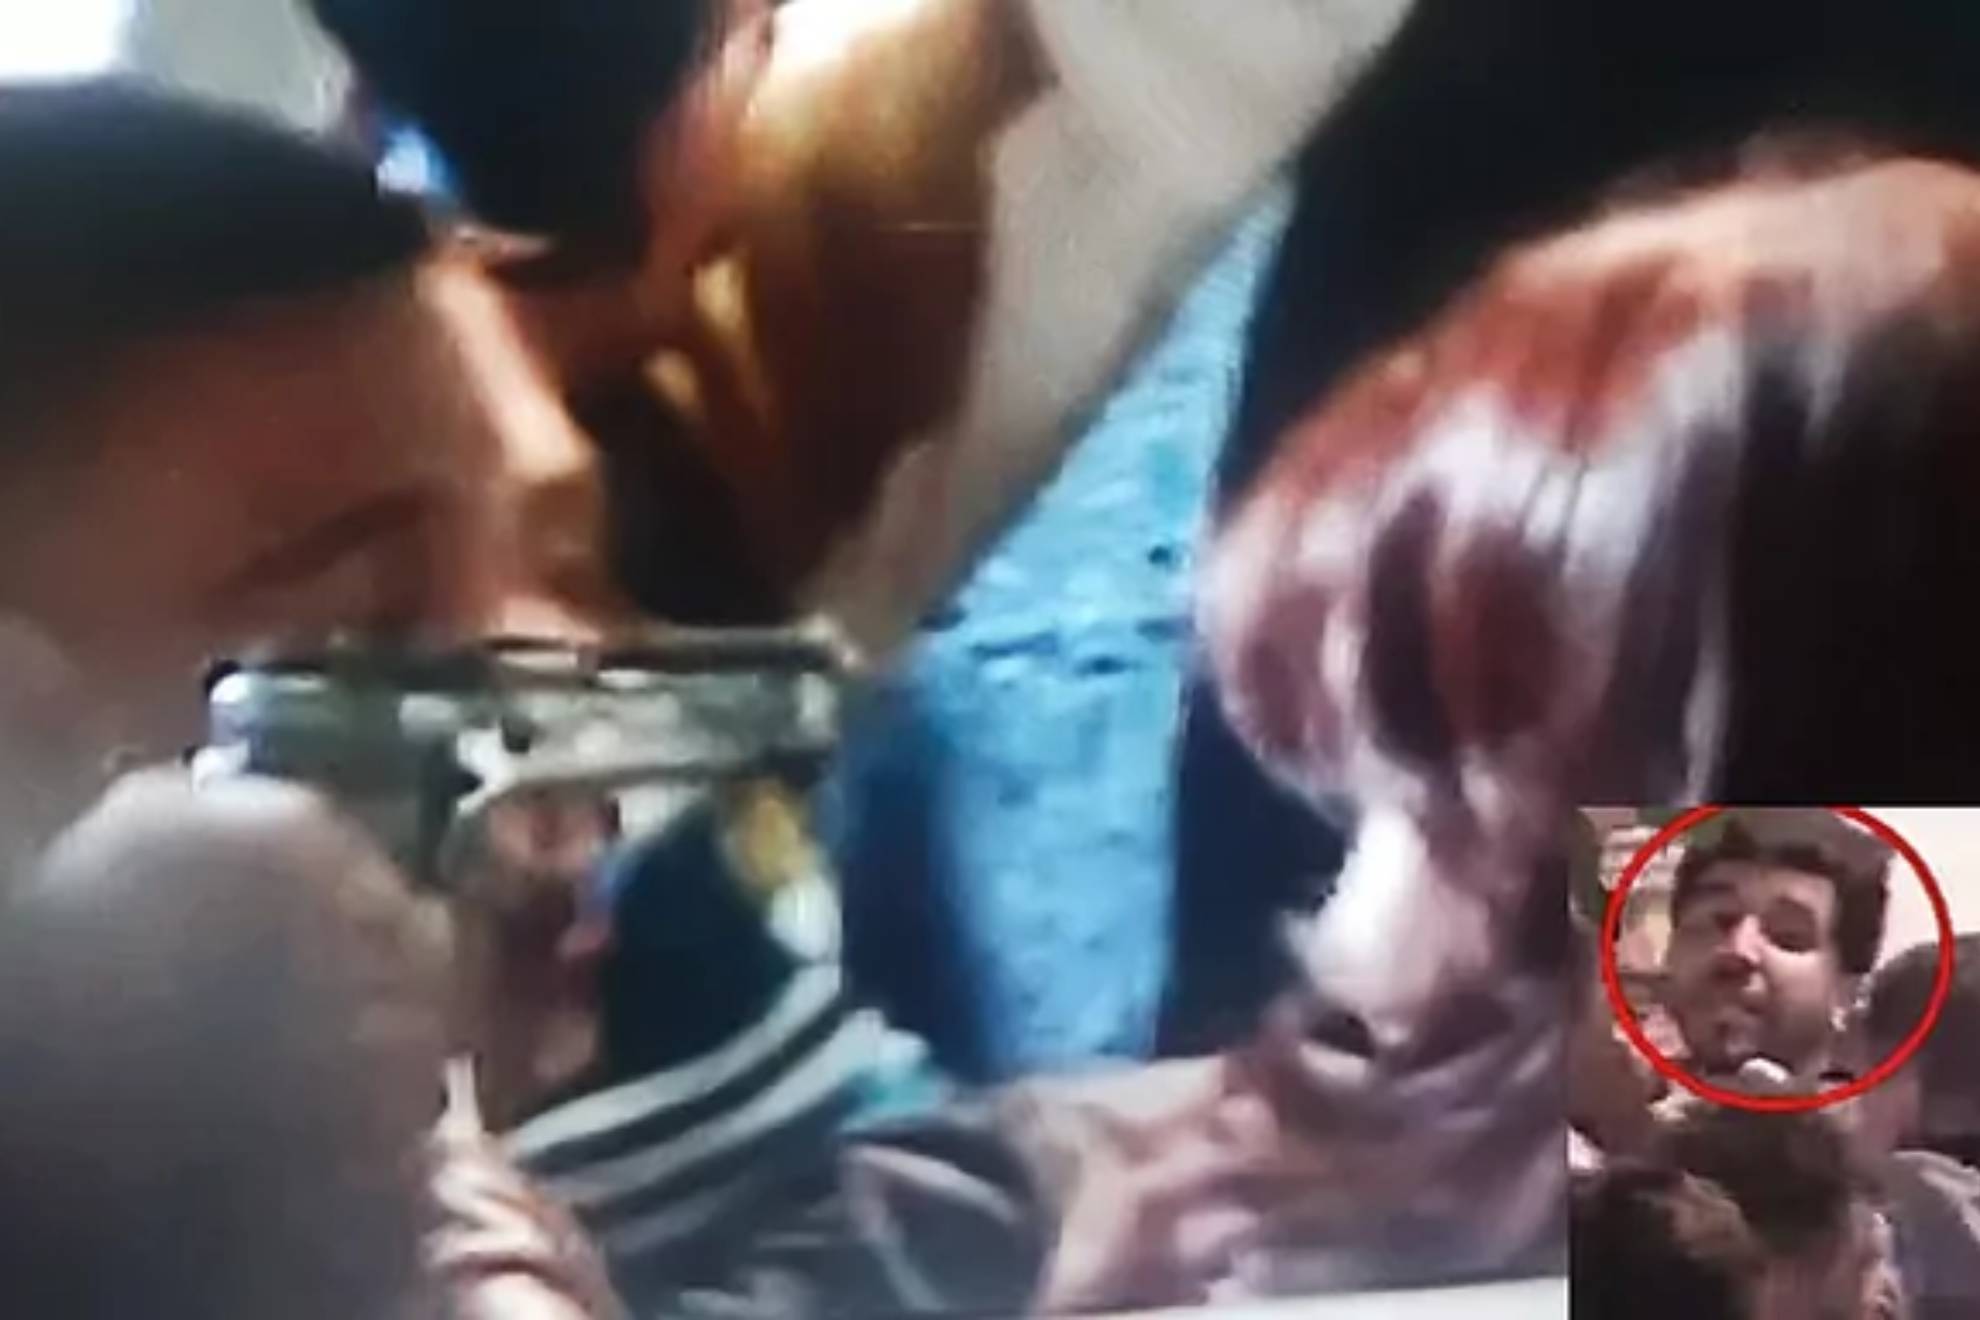 Cristina Fernandez de Kirchner's assailant was identified as Fernando Andres Zabak Montiel/Screenshoot